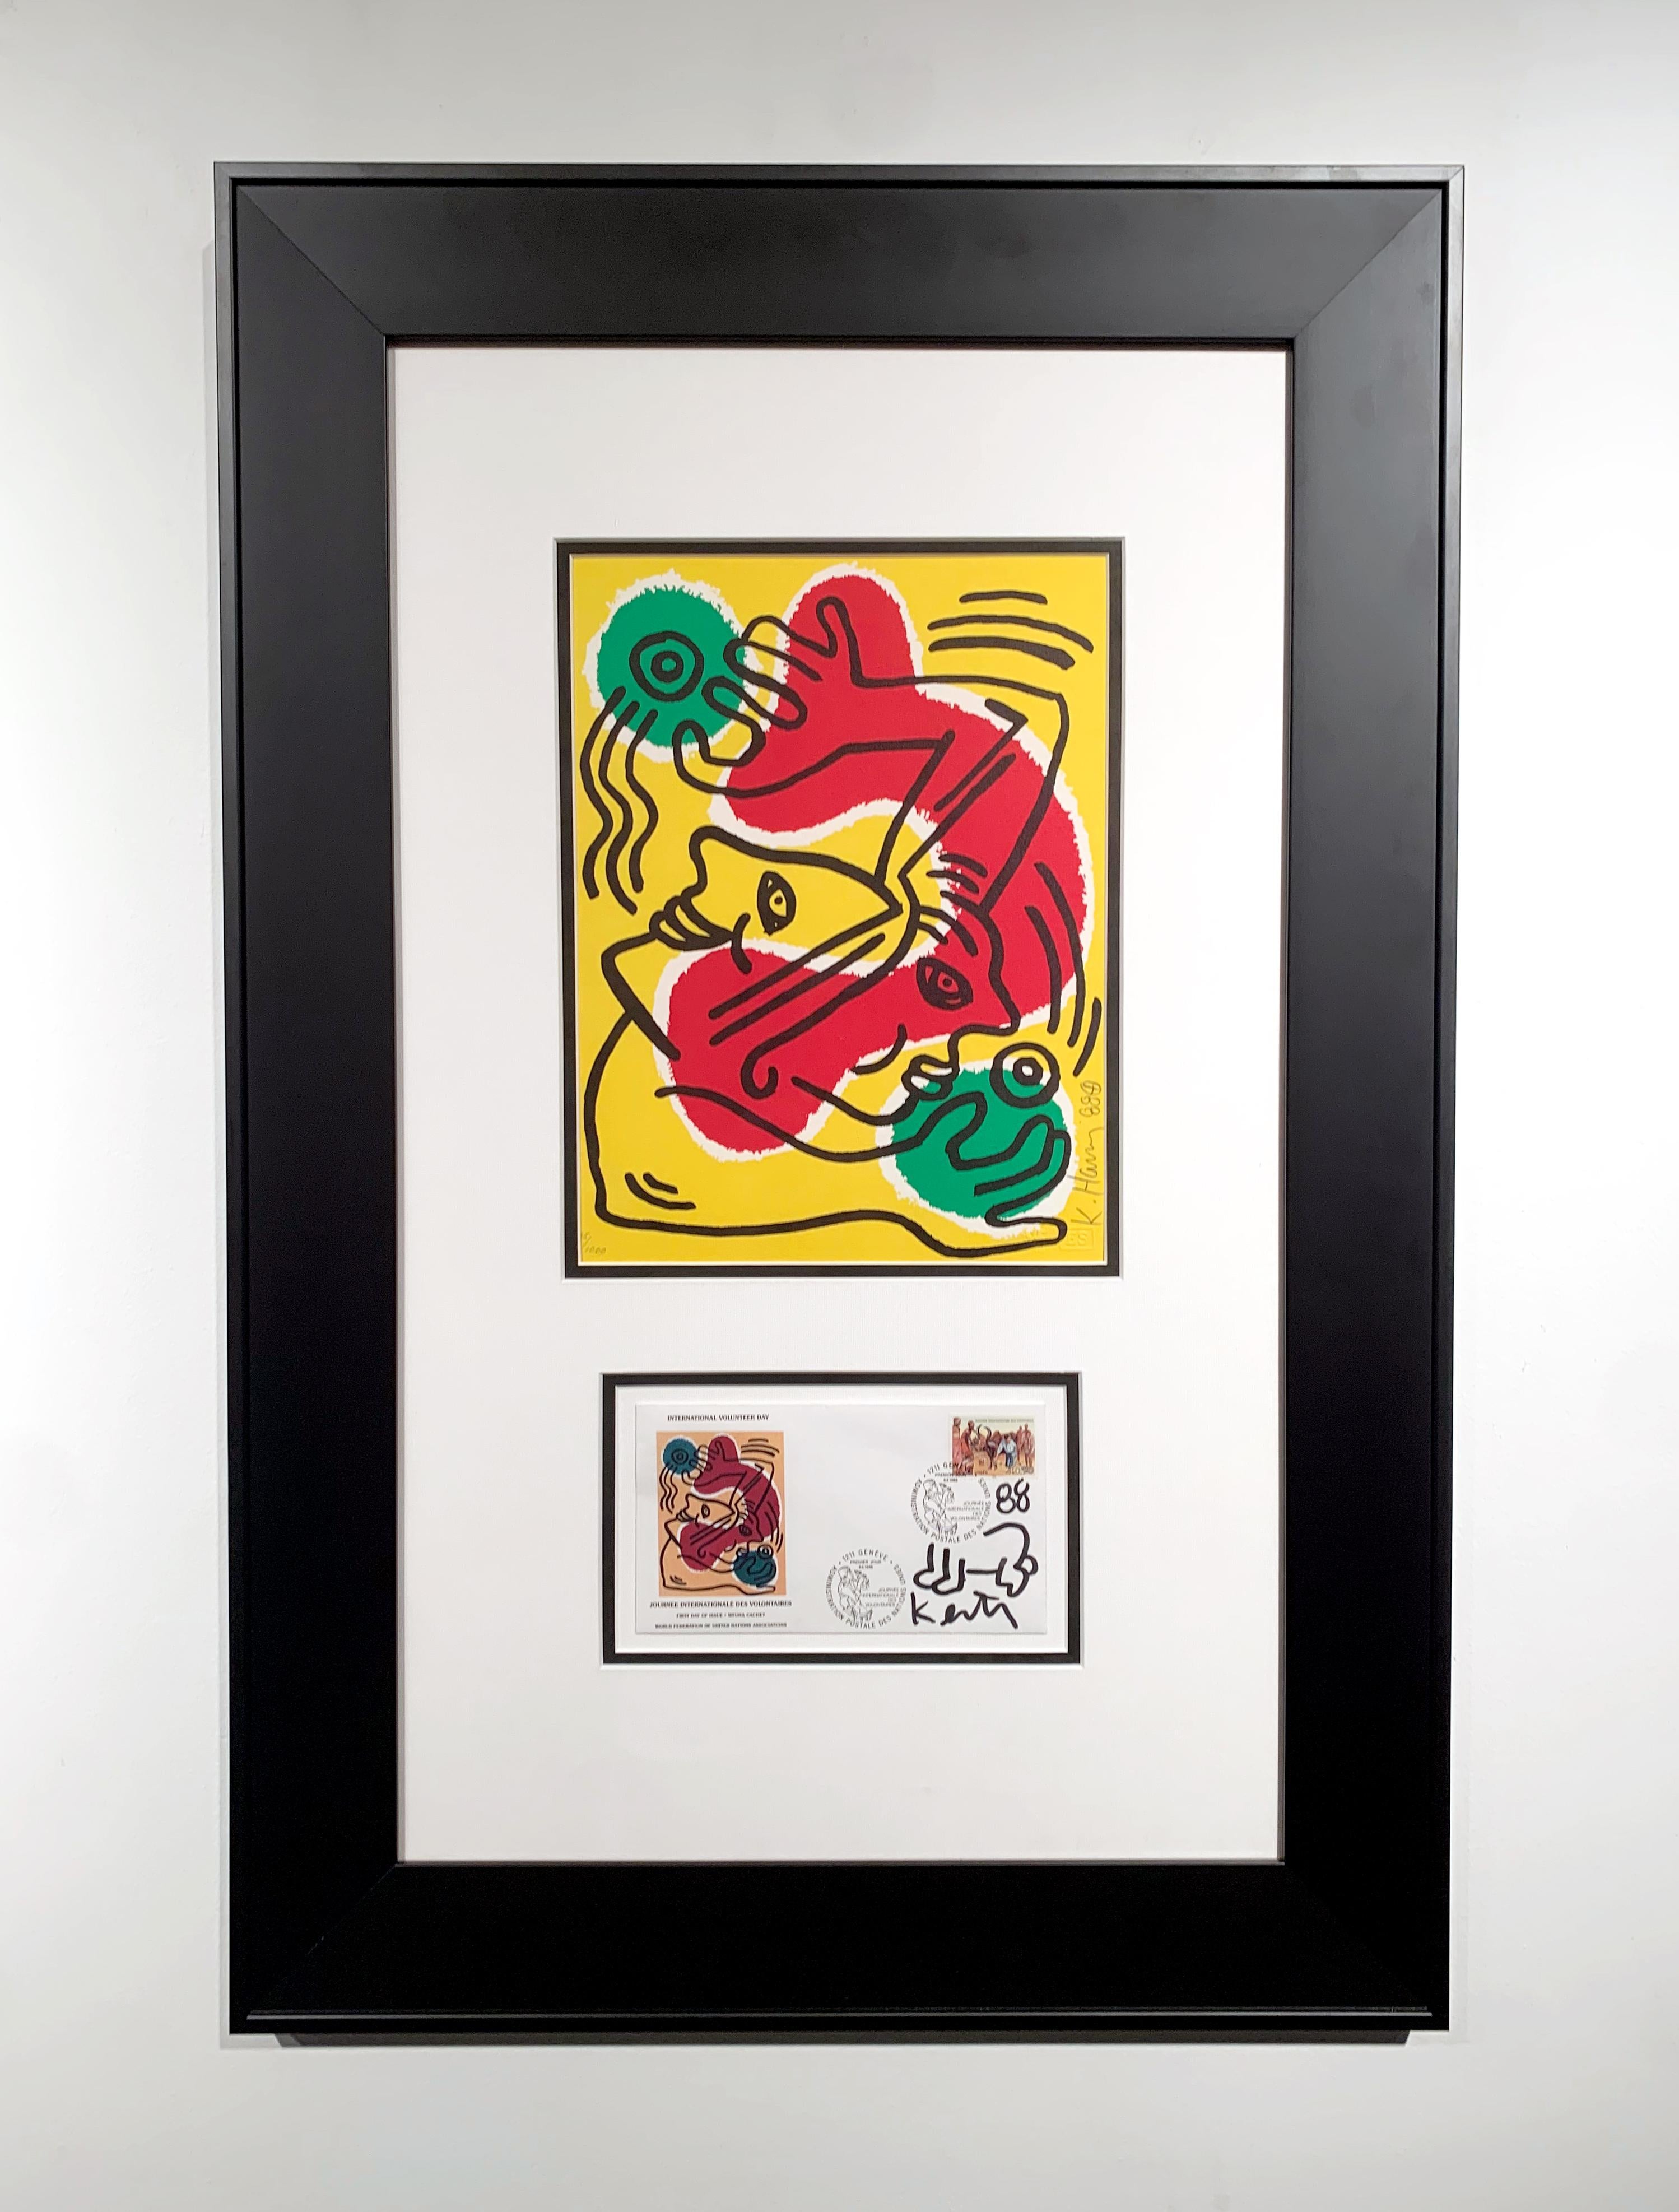 International Volunteer Day - Print by Keith Haring